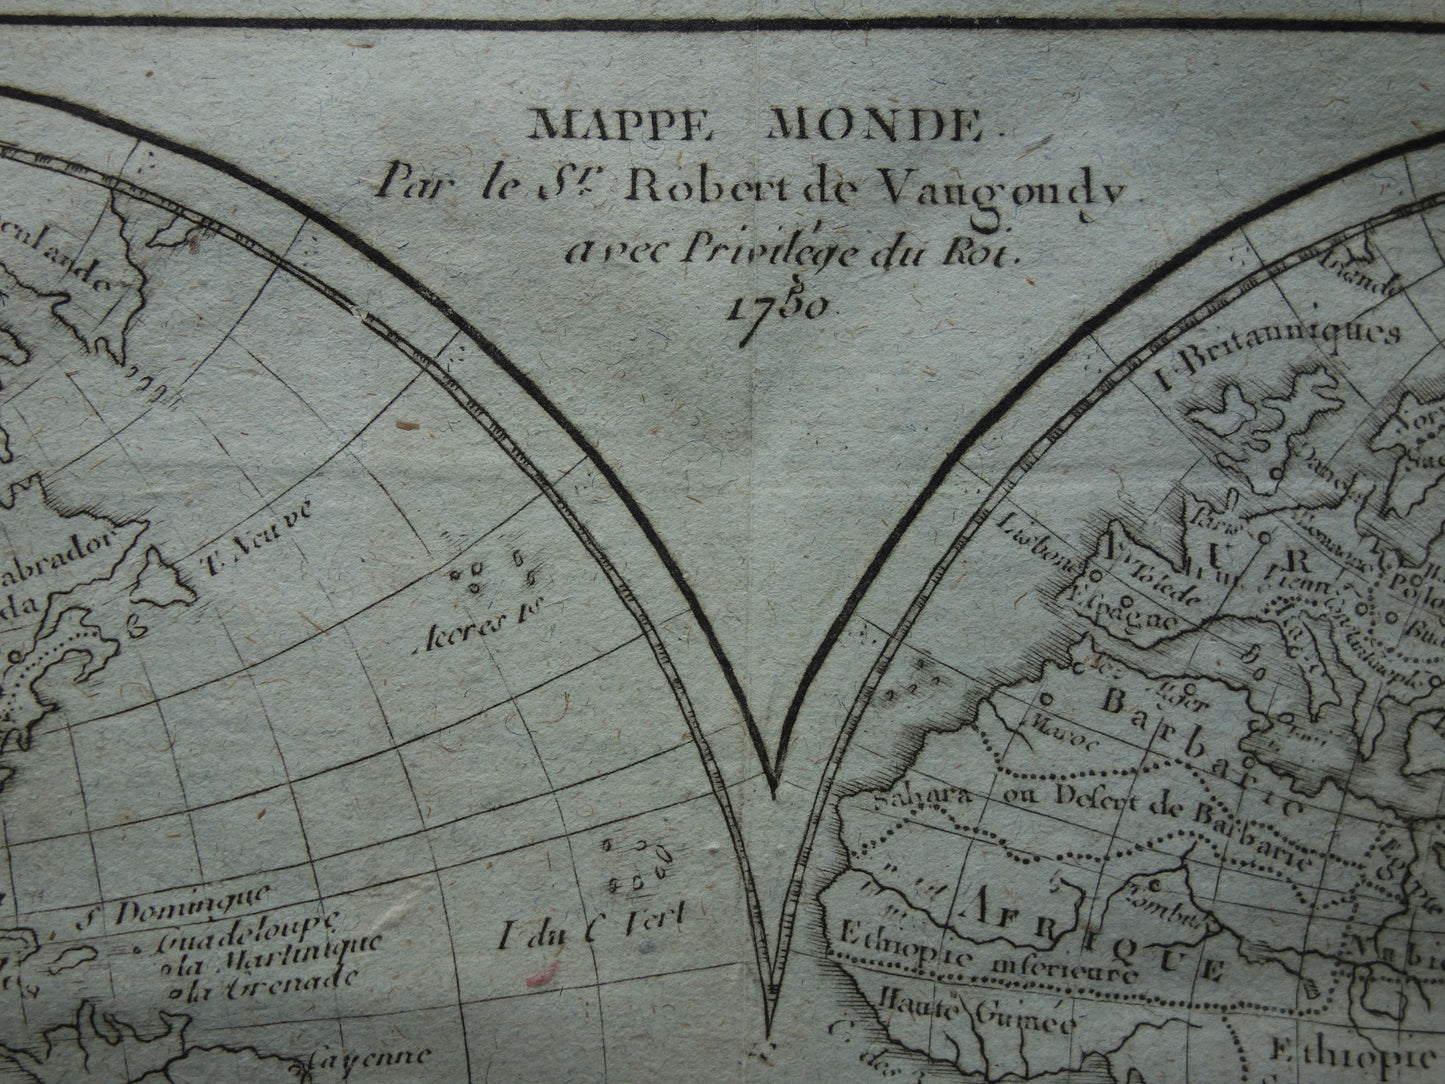 wereldkaart 1750 Robert de Vaugondy Mappe Monde